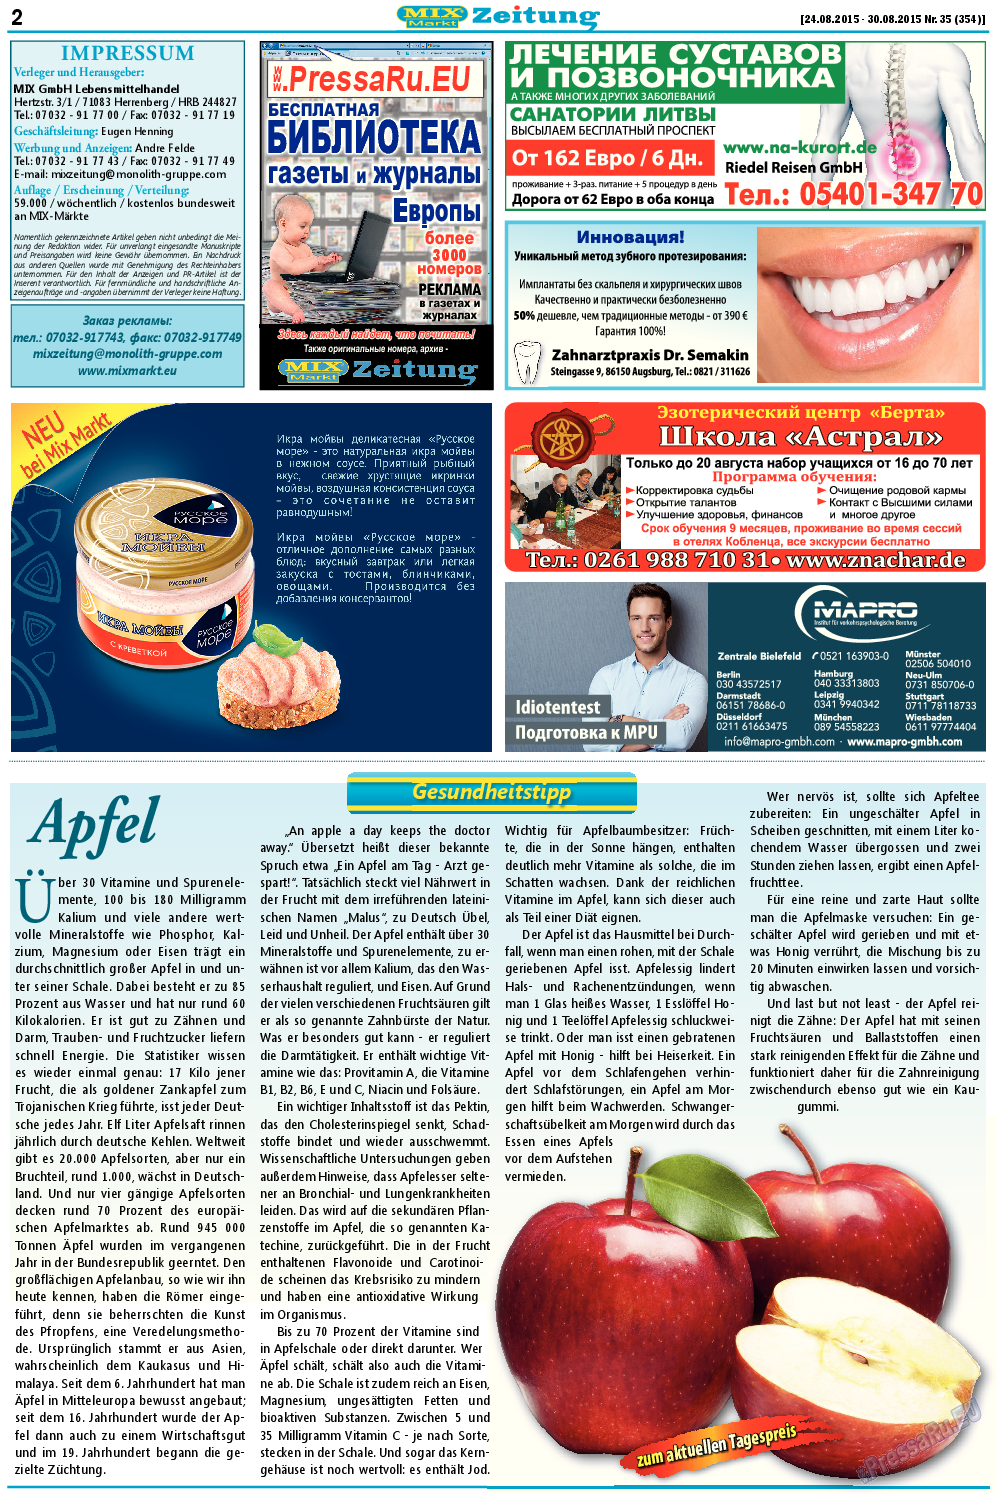 MIX-Markt Zeitung (газета). 2015 год, номер 35, стр. 2